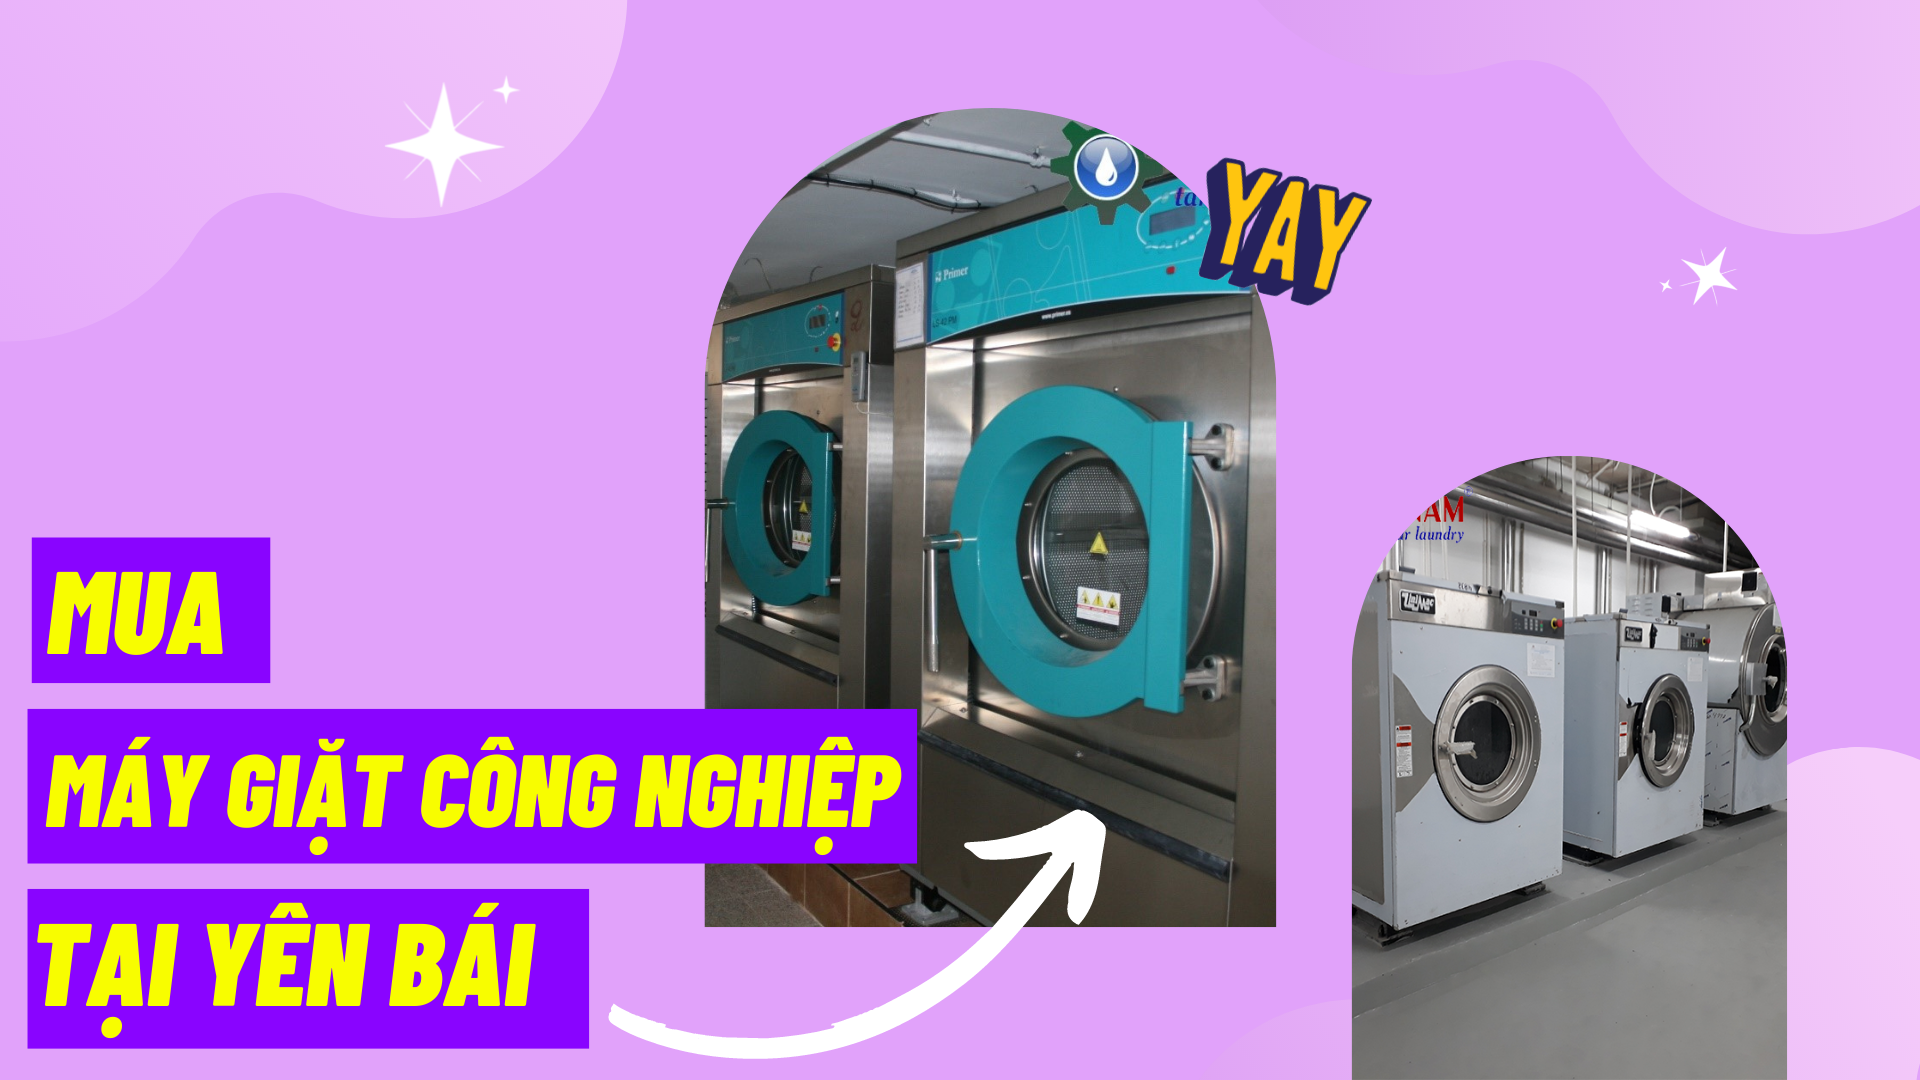 Địa chỉ uy tín cung cấp máy giặt công nghiệp tại Yên Bái